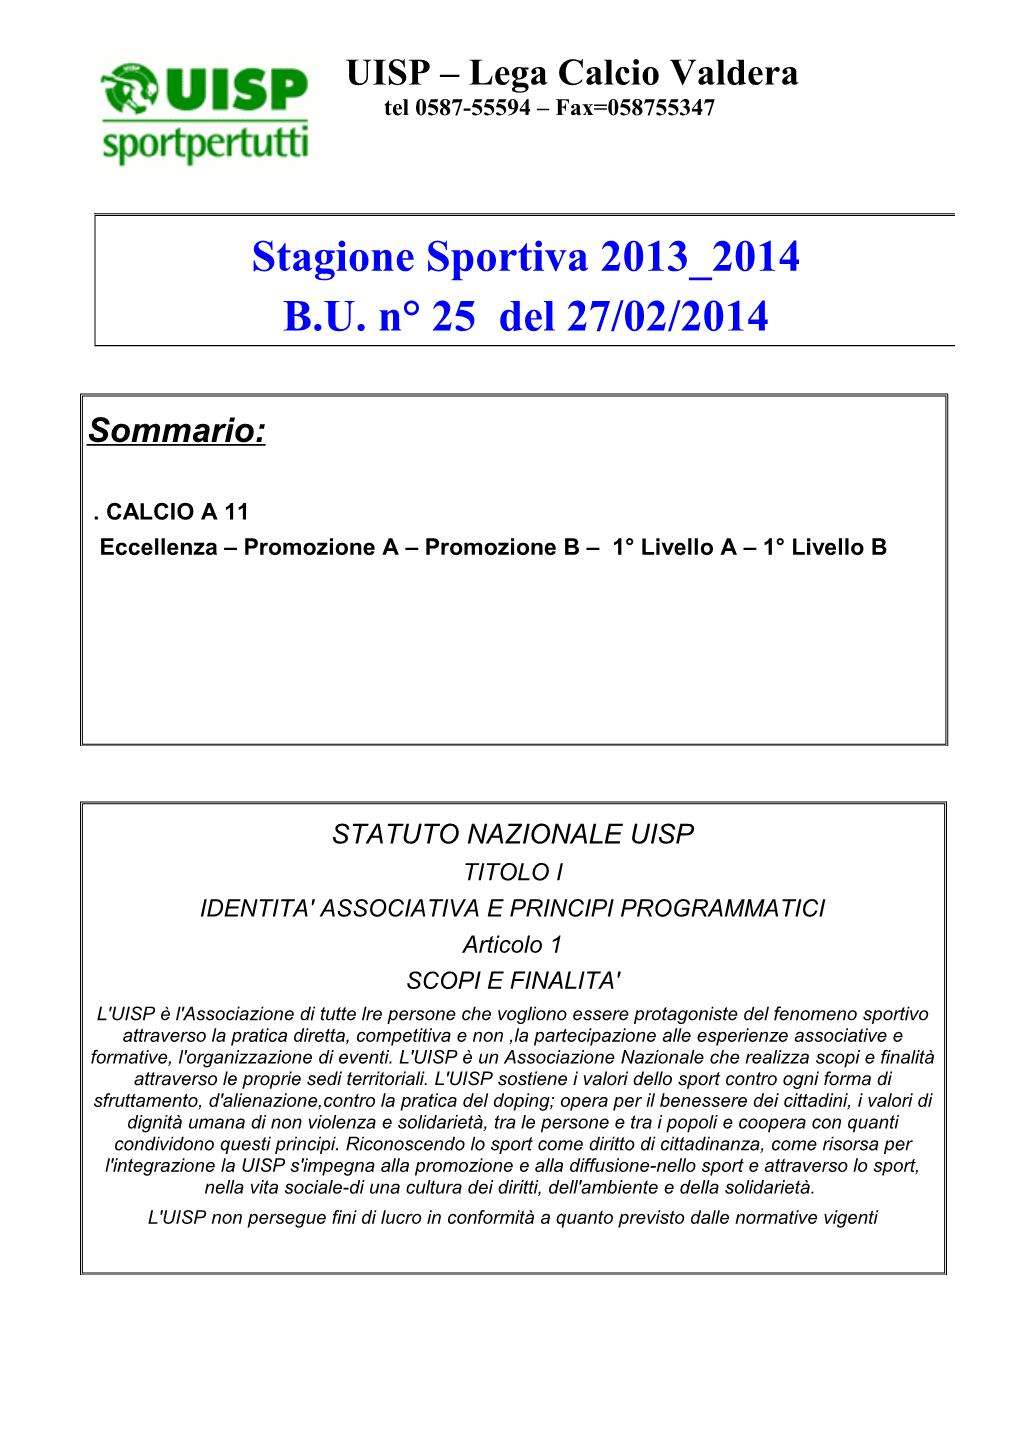 Stagione Sportiva 2013 2014 B.U. N° 25 Del 27/02/2014